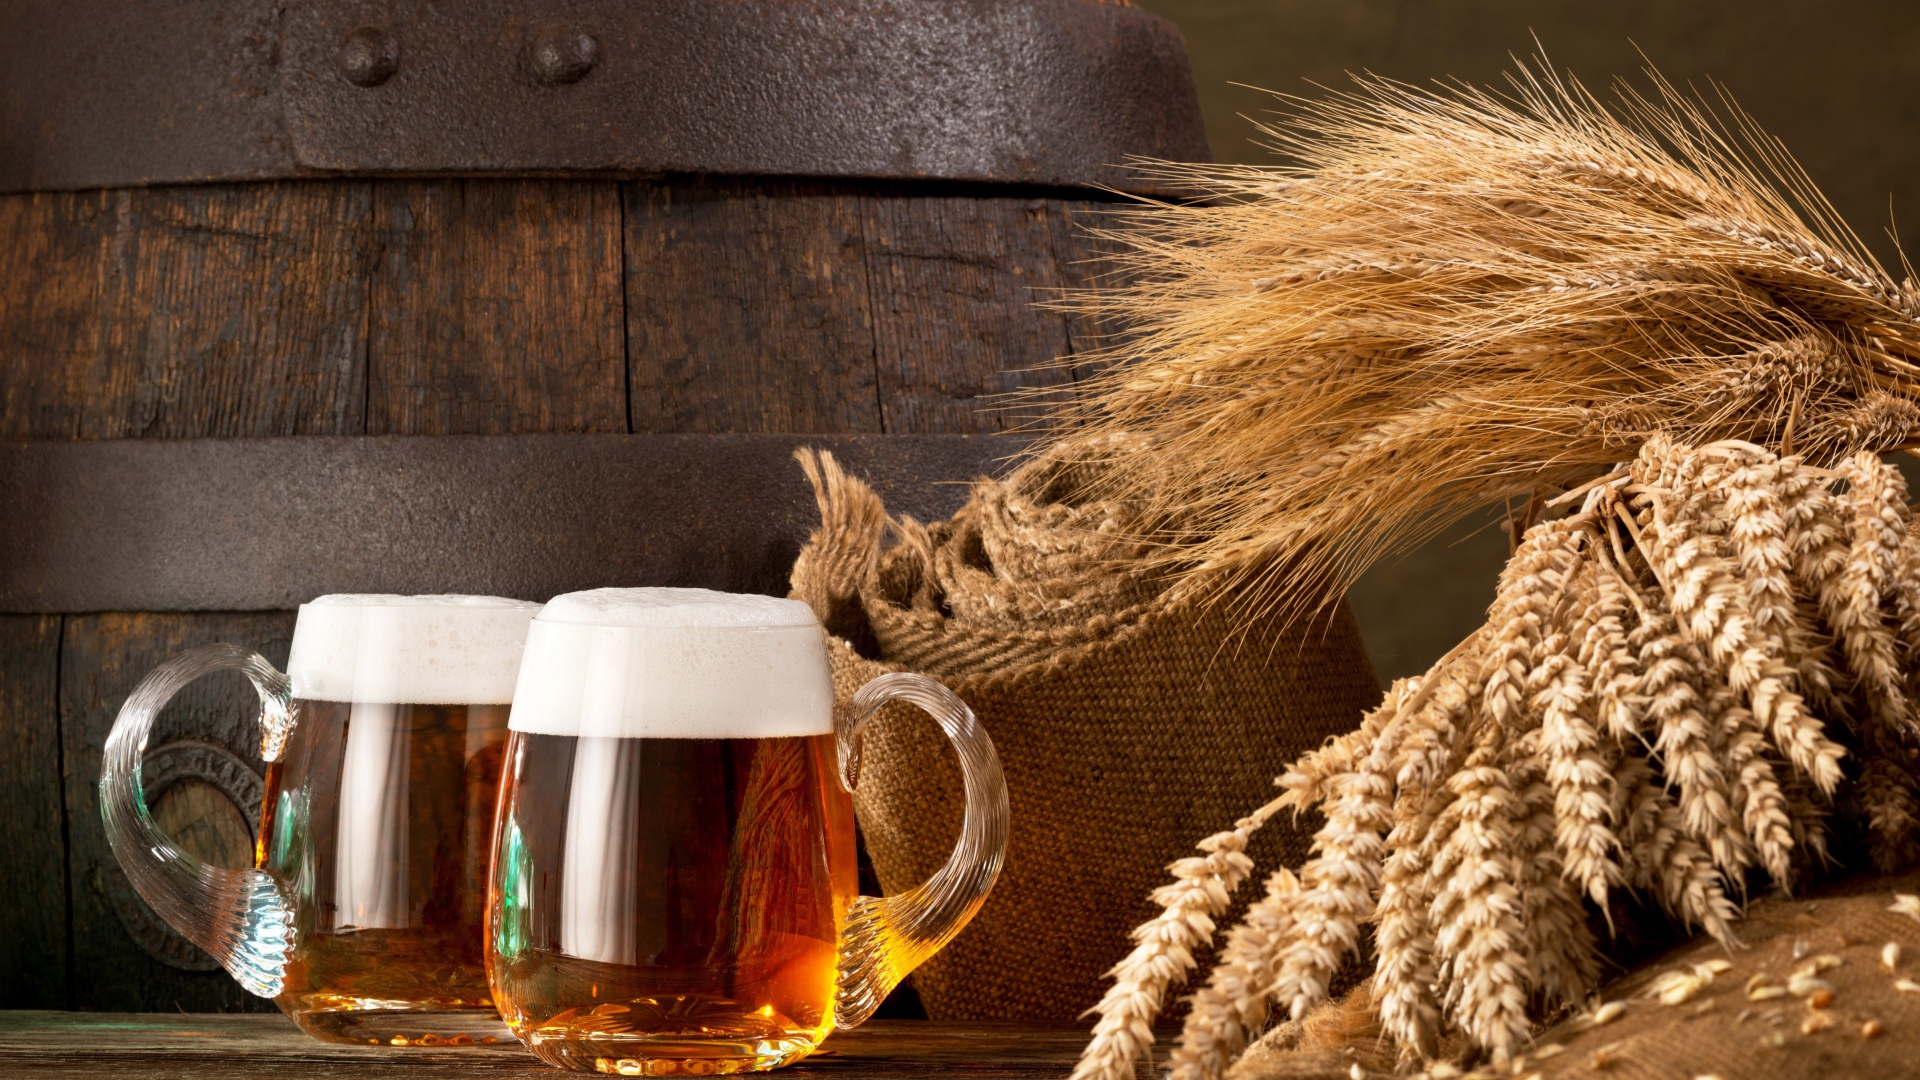 Два бокала пива на столе с колосьями пшеницы  и бочкой